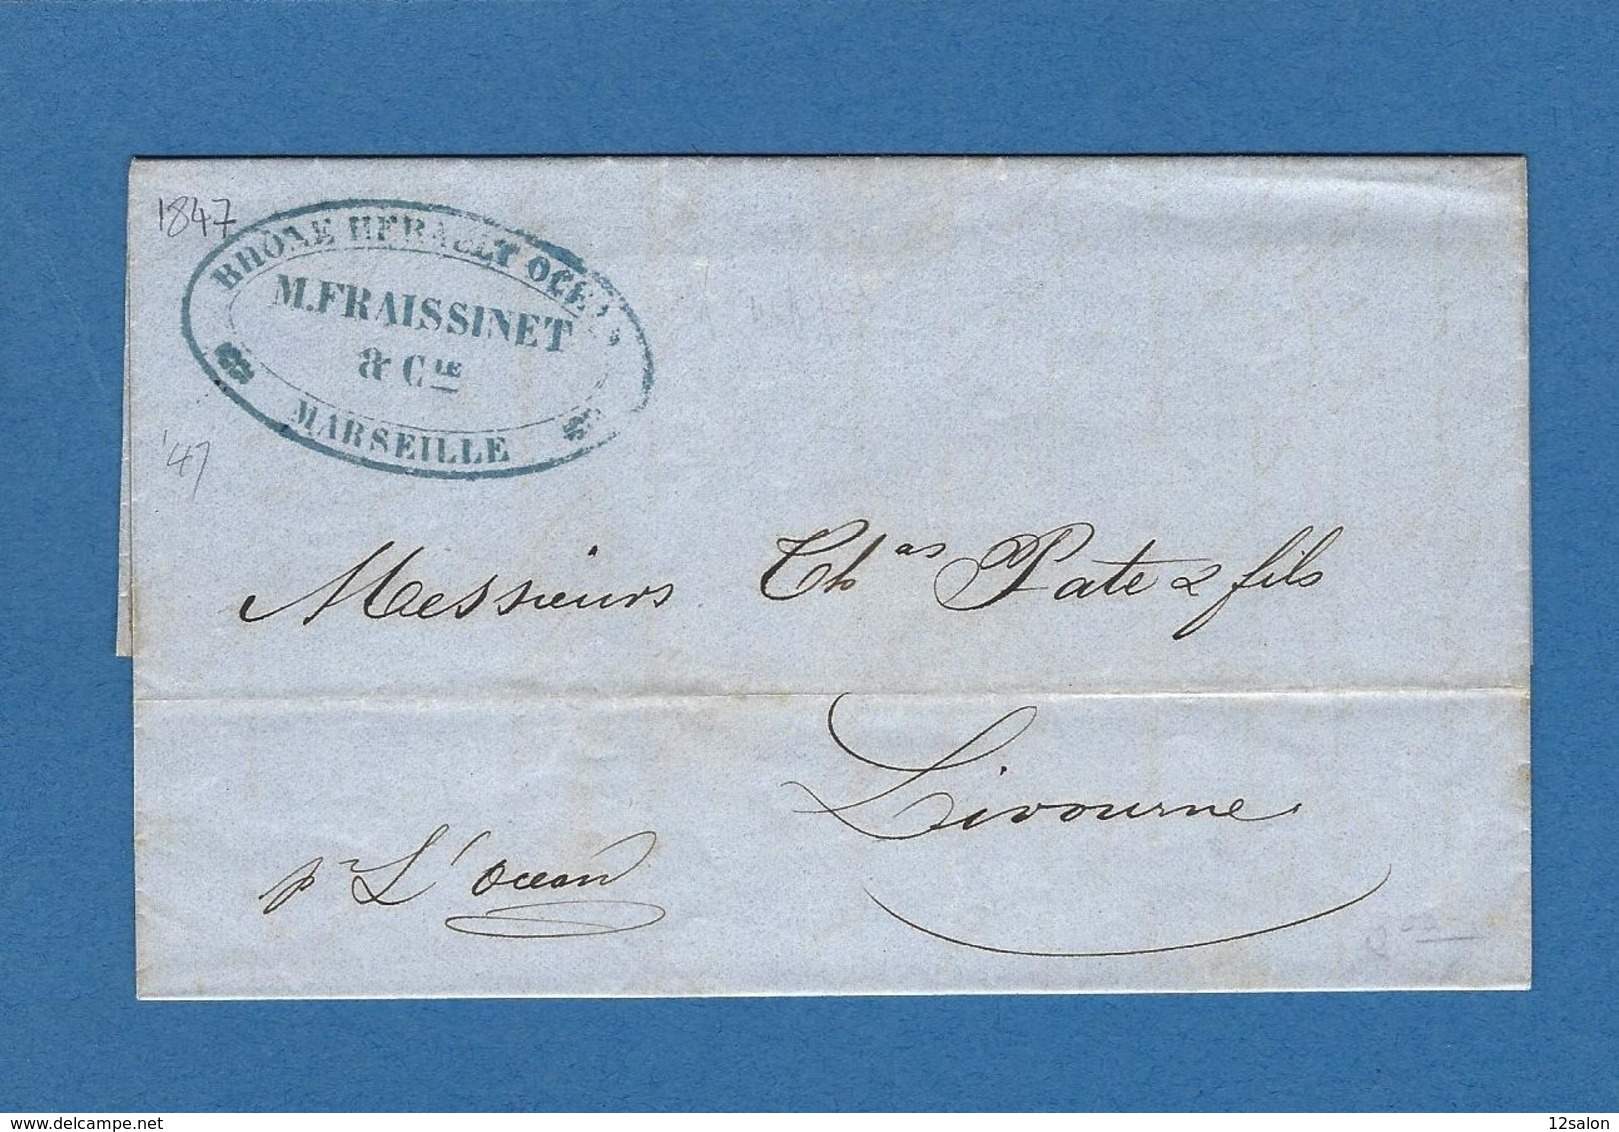 BOUCHES DU RHONE MARSEILLE ACHEMINEUR 1847 Pour LIVOURNE - Maritime Post